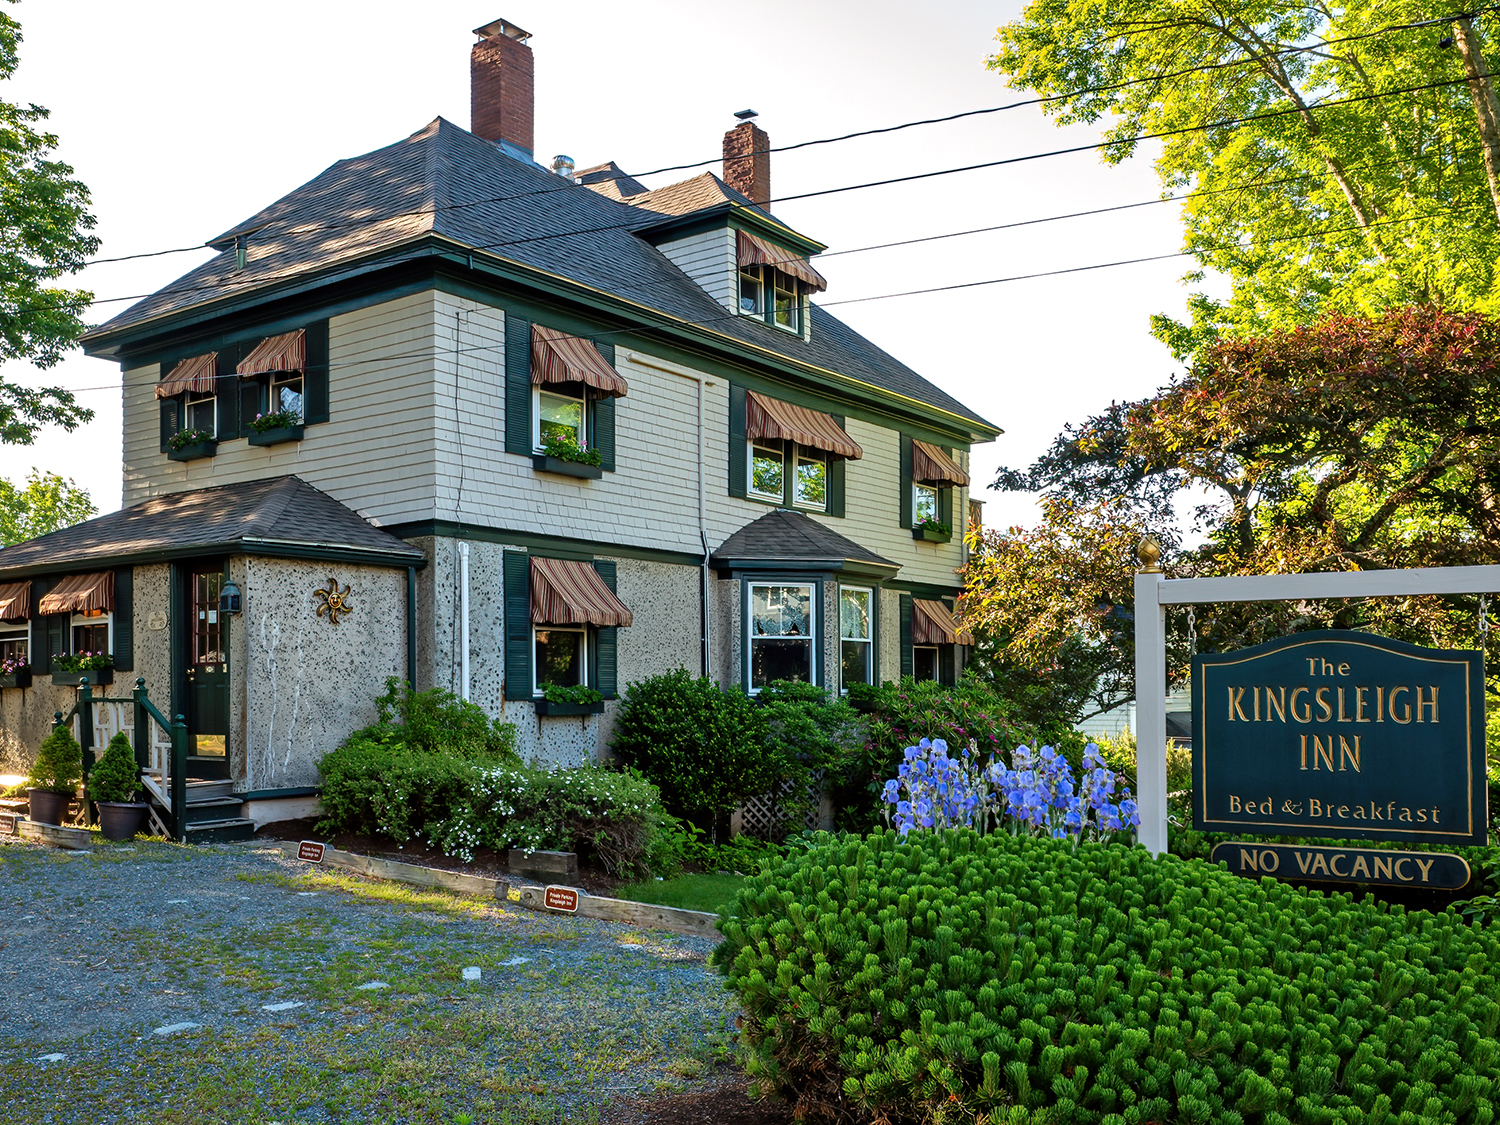 Maine bed and breakfast inn for sale - The Kingsleigh Inn